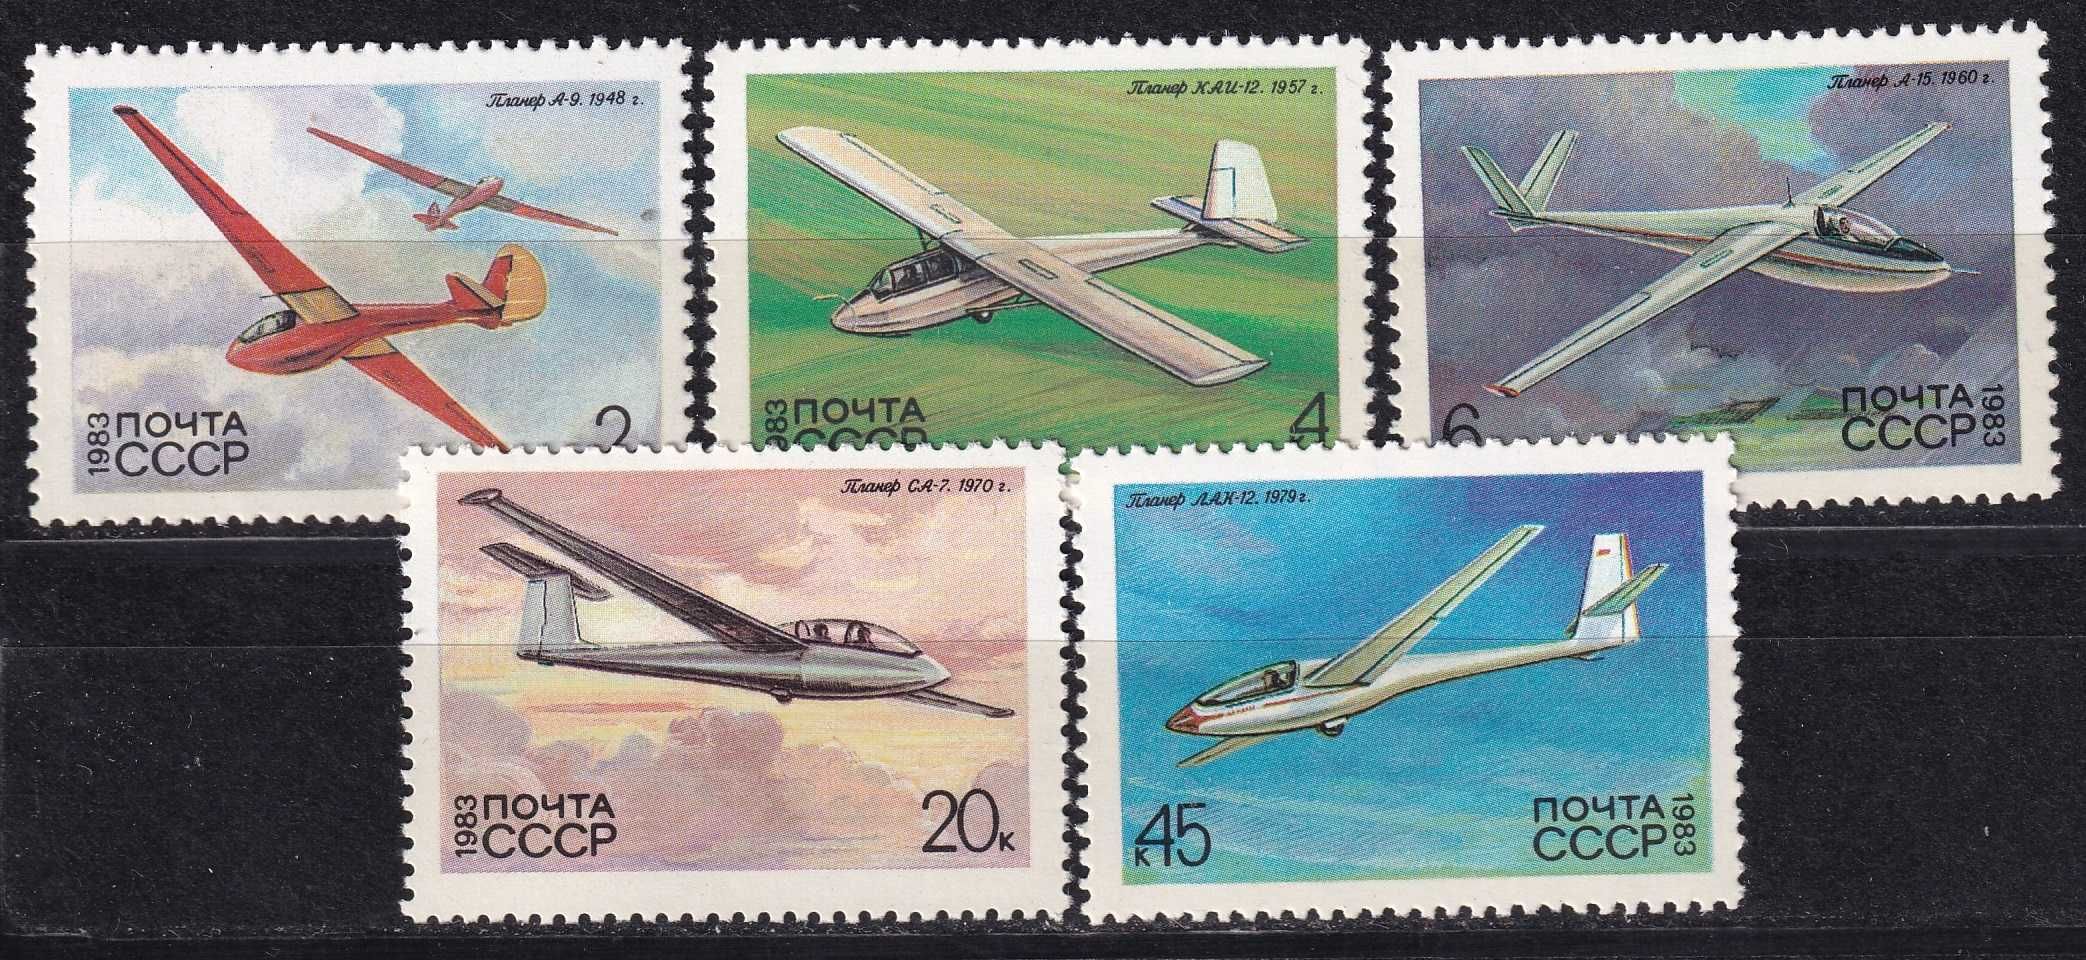 znaczki pocztowe - ZSRR 1983 cena 2,40 zł kat.3€